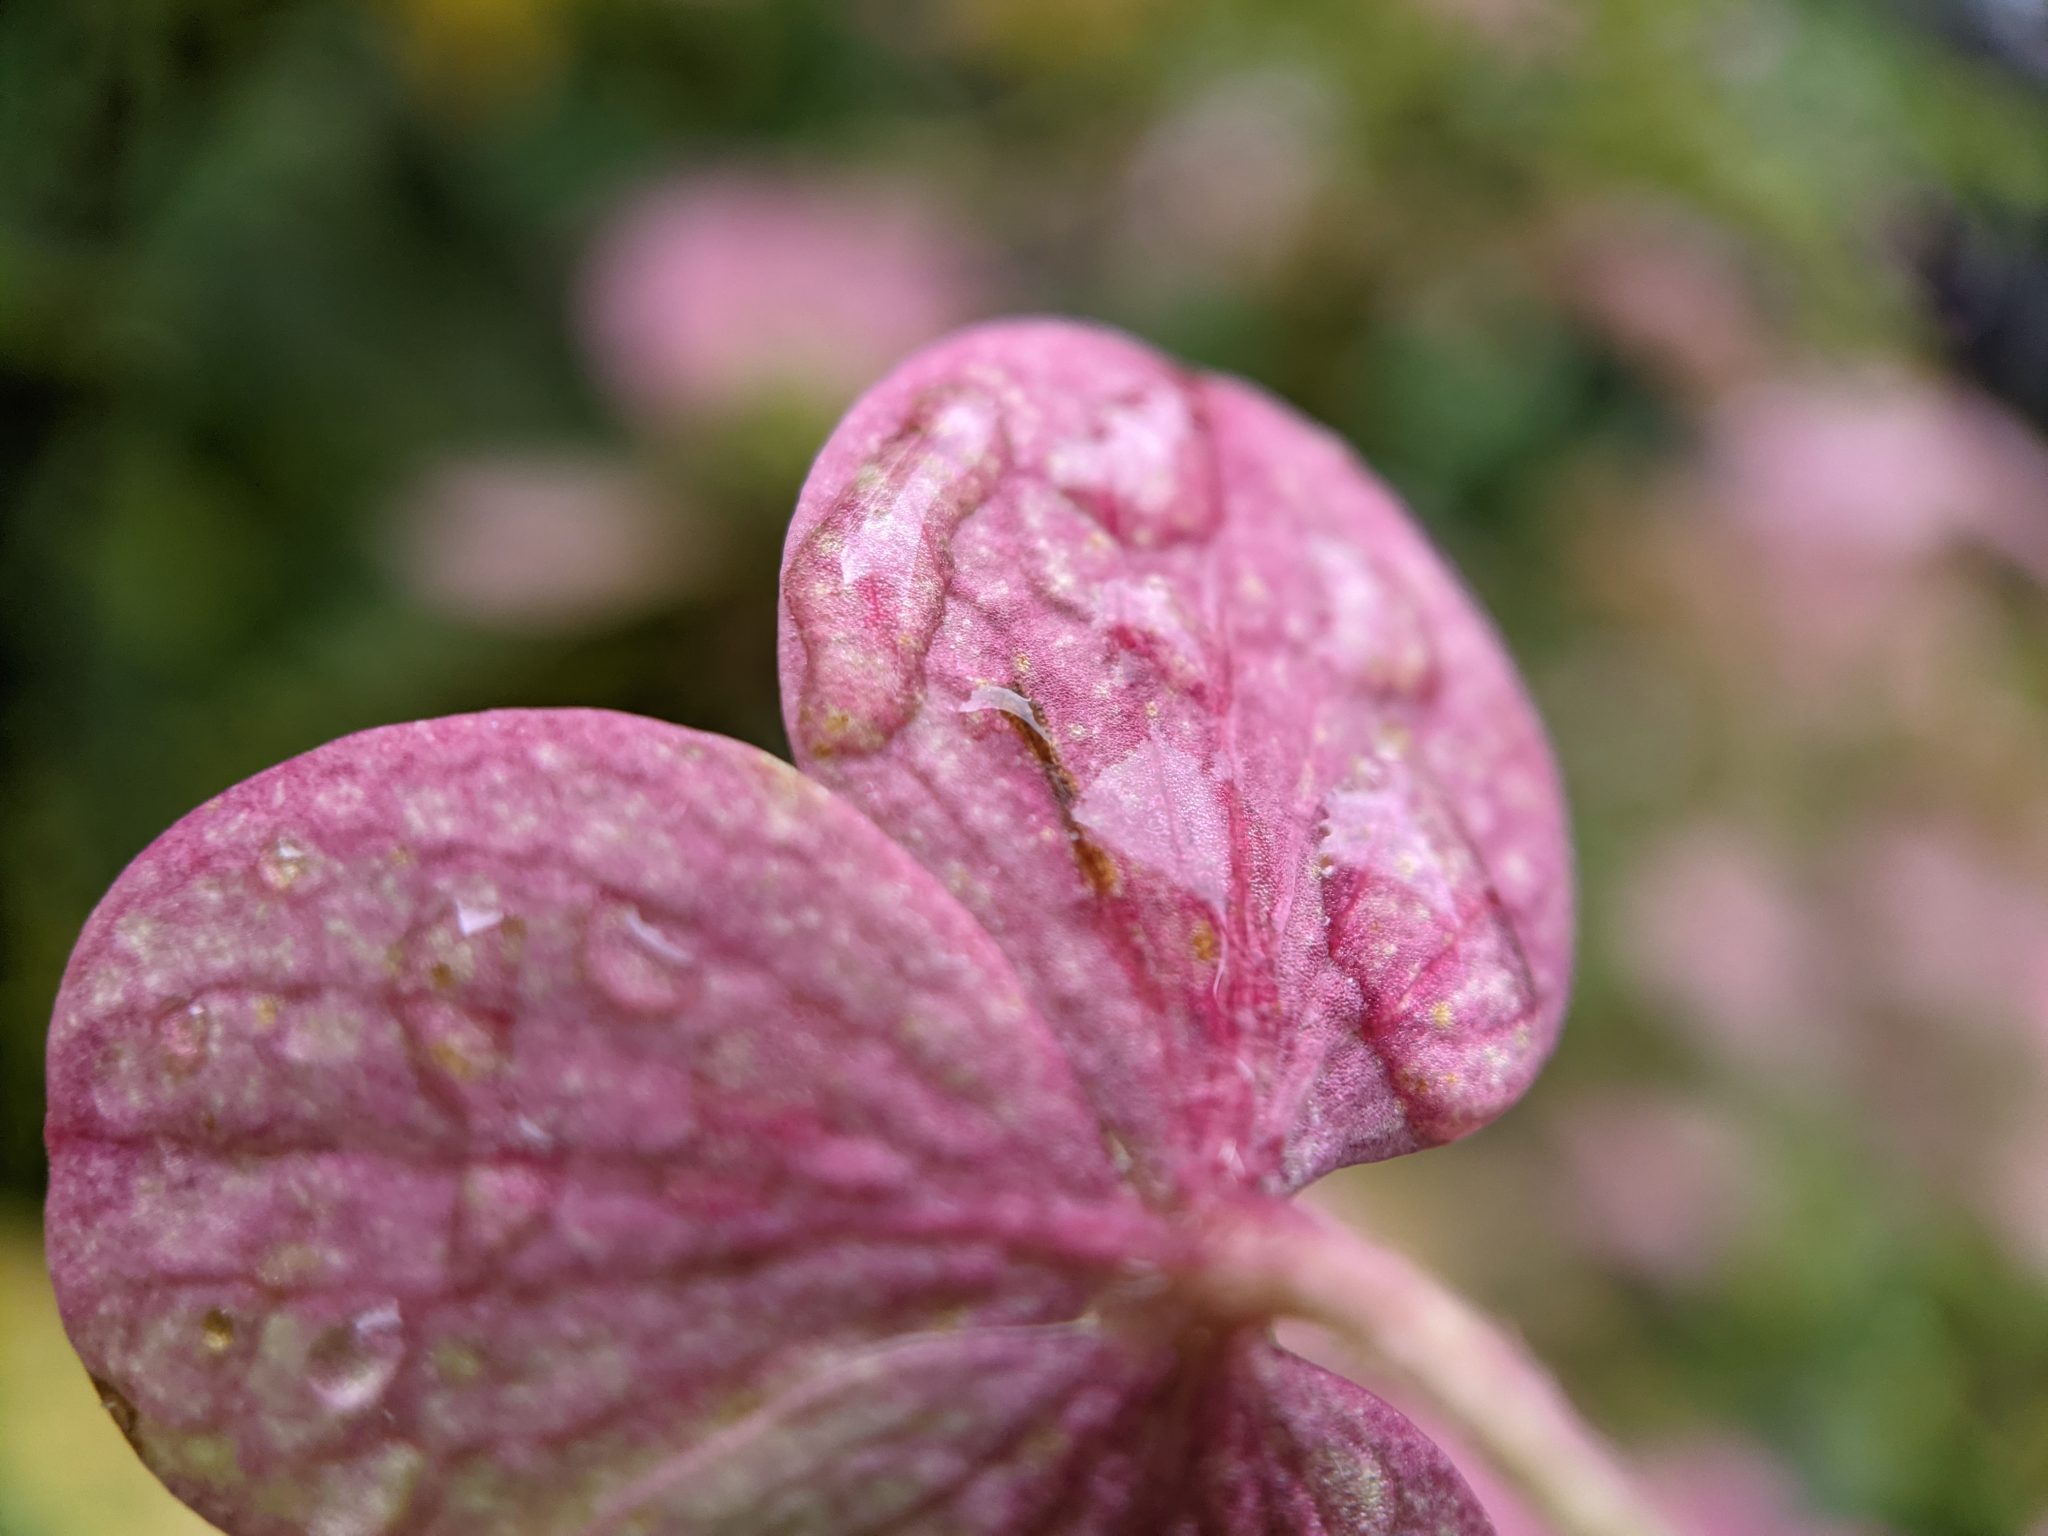 Water droplets on a hydrangea petal